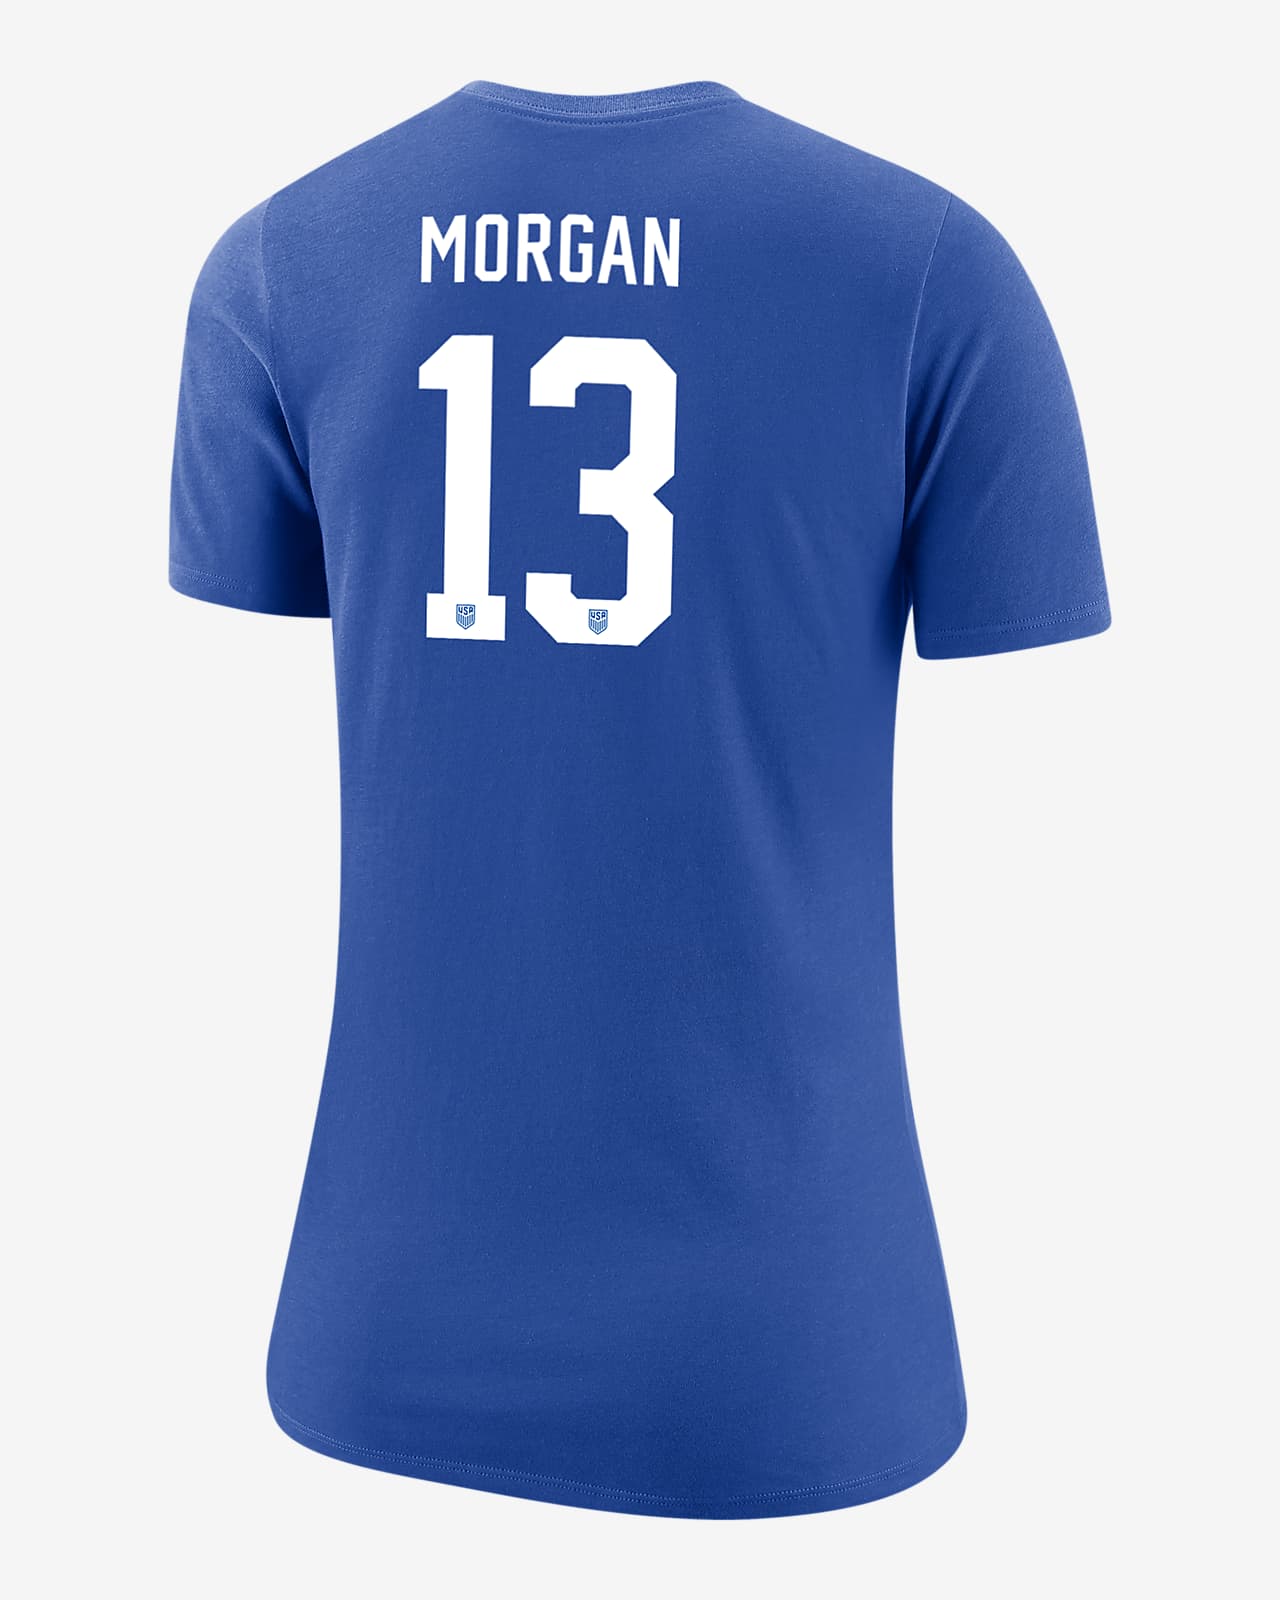 Playera de fútbol Nike para mujer Alex Morgan USWNT